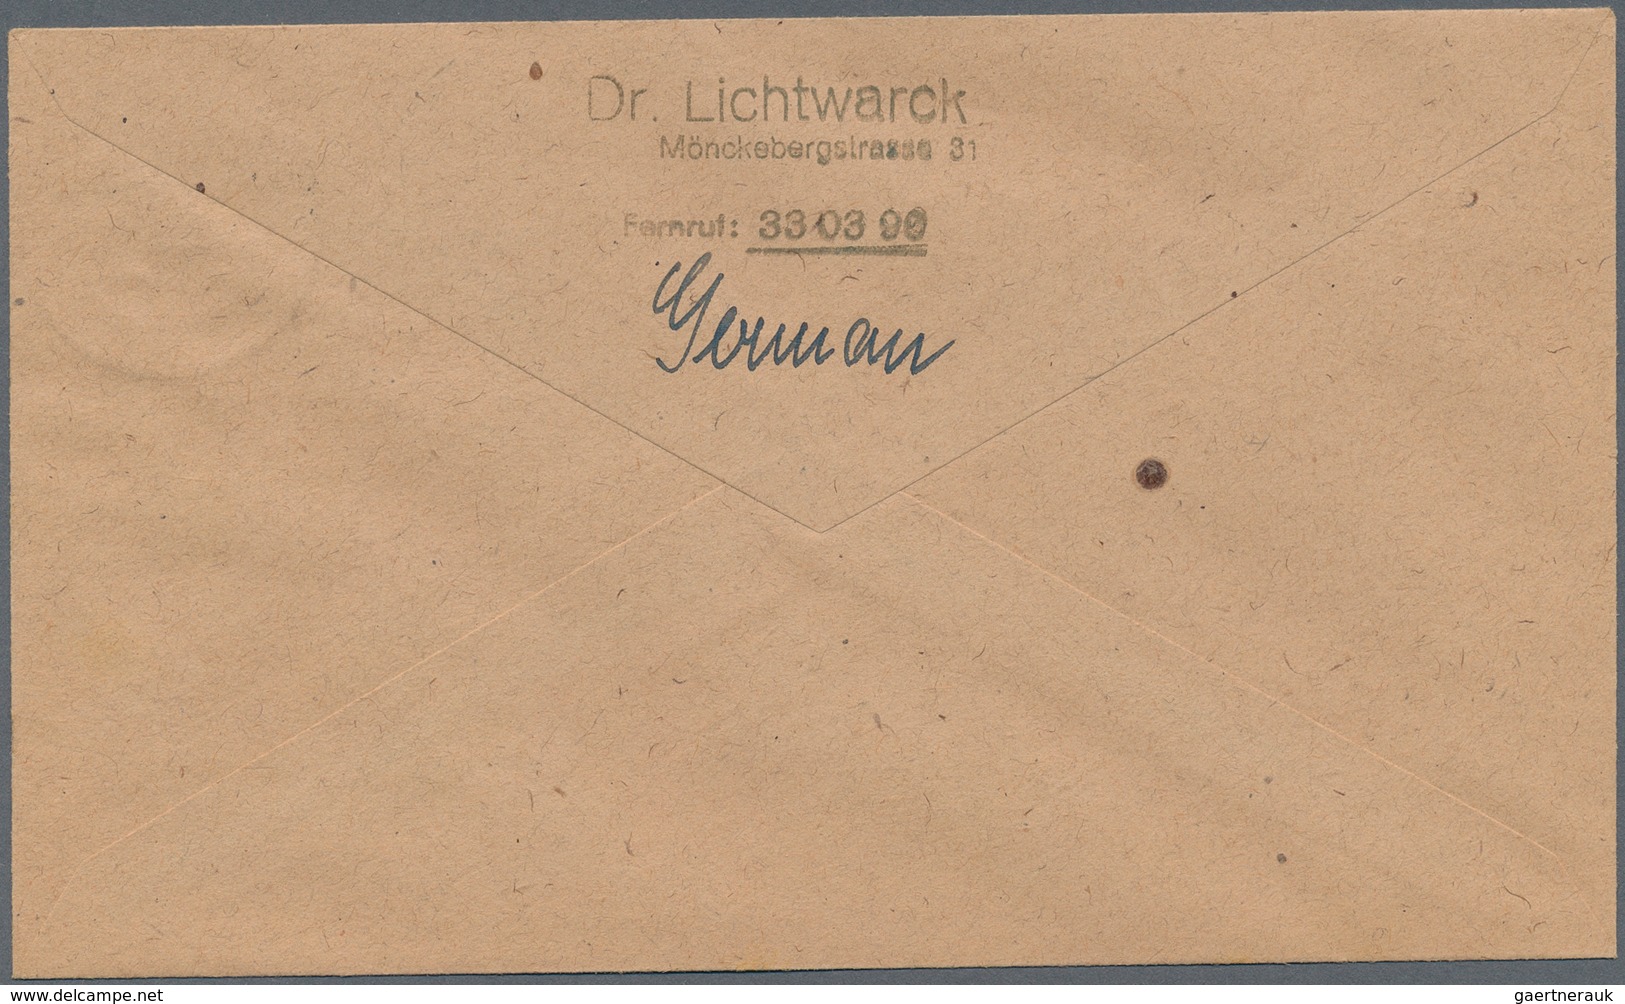 Bizone: 1945, 1 RM AM-Post vom Unterrand (Reihennummer 1 - 4) gestempelt "HAMBURG" je auf 4 adressie